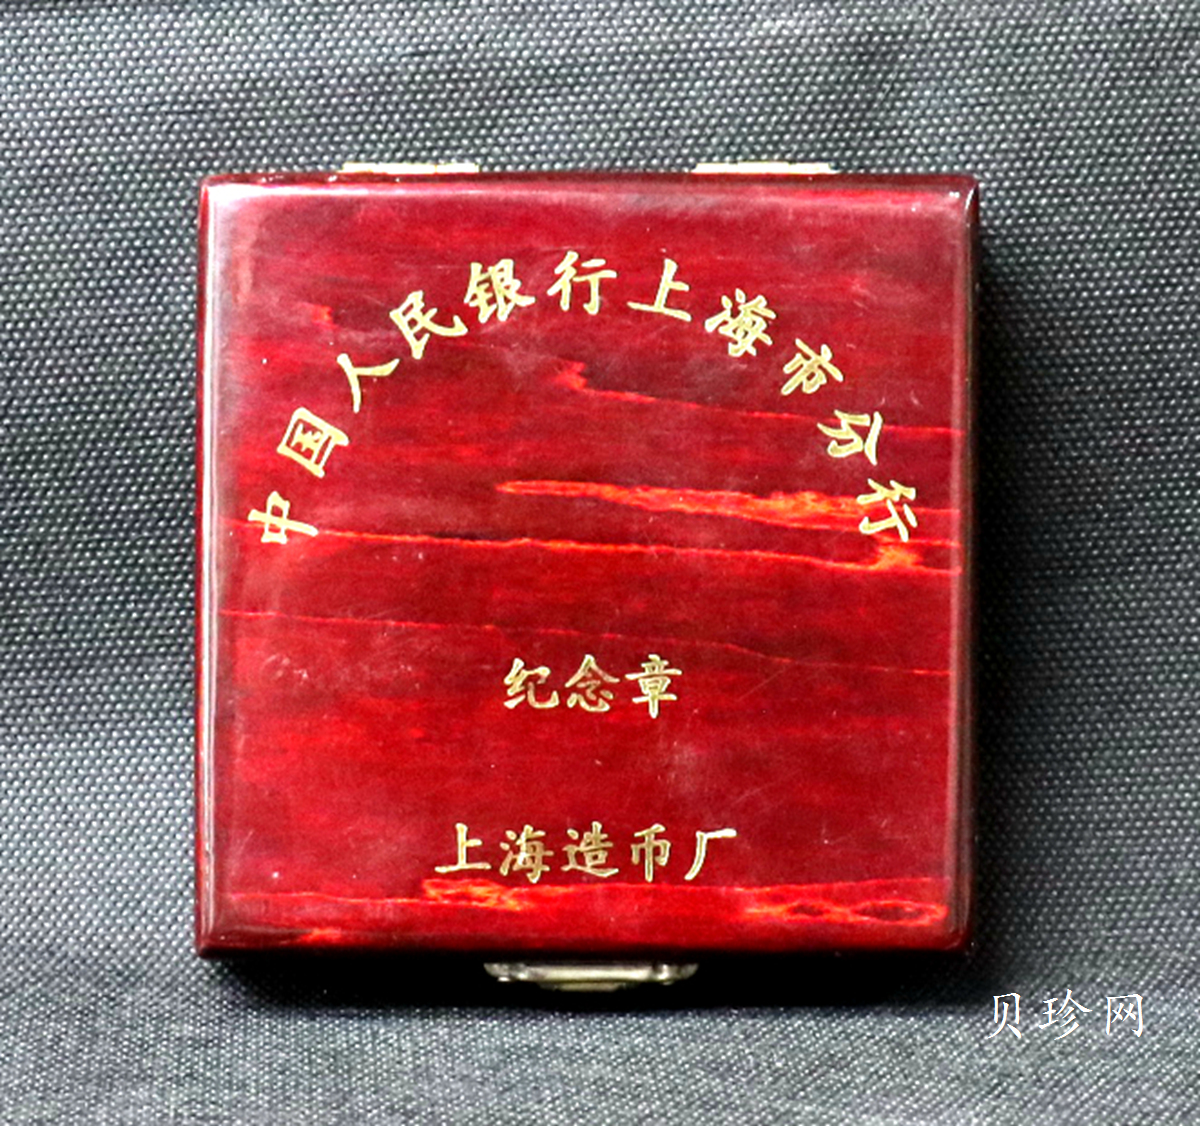 【979680】上海造币厂 中国人民银行上海市分行60毫米纪念章